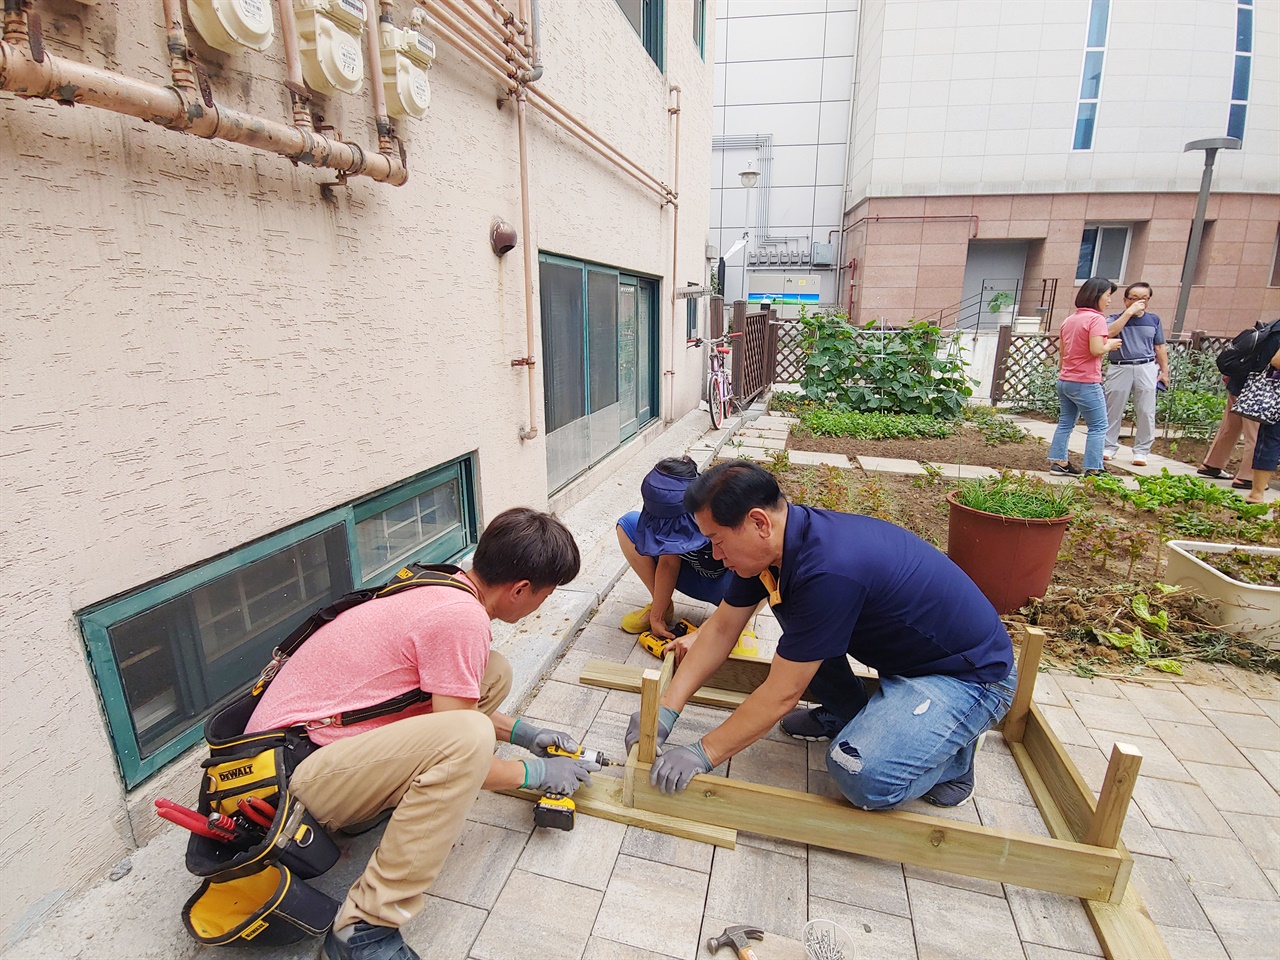   경기 성남시가 오는 15일부터 19일까지 지역 주민 모임 등을 대상으로 ‘도시재생사업’을 공모한다. 